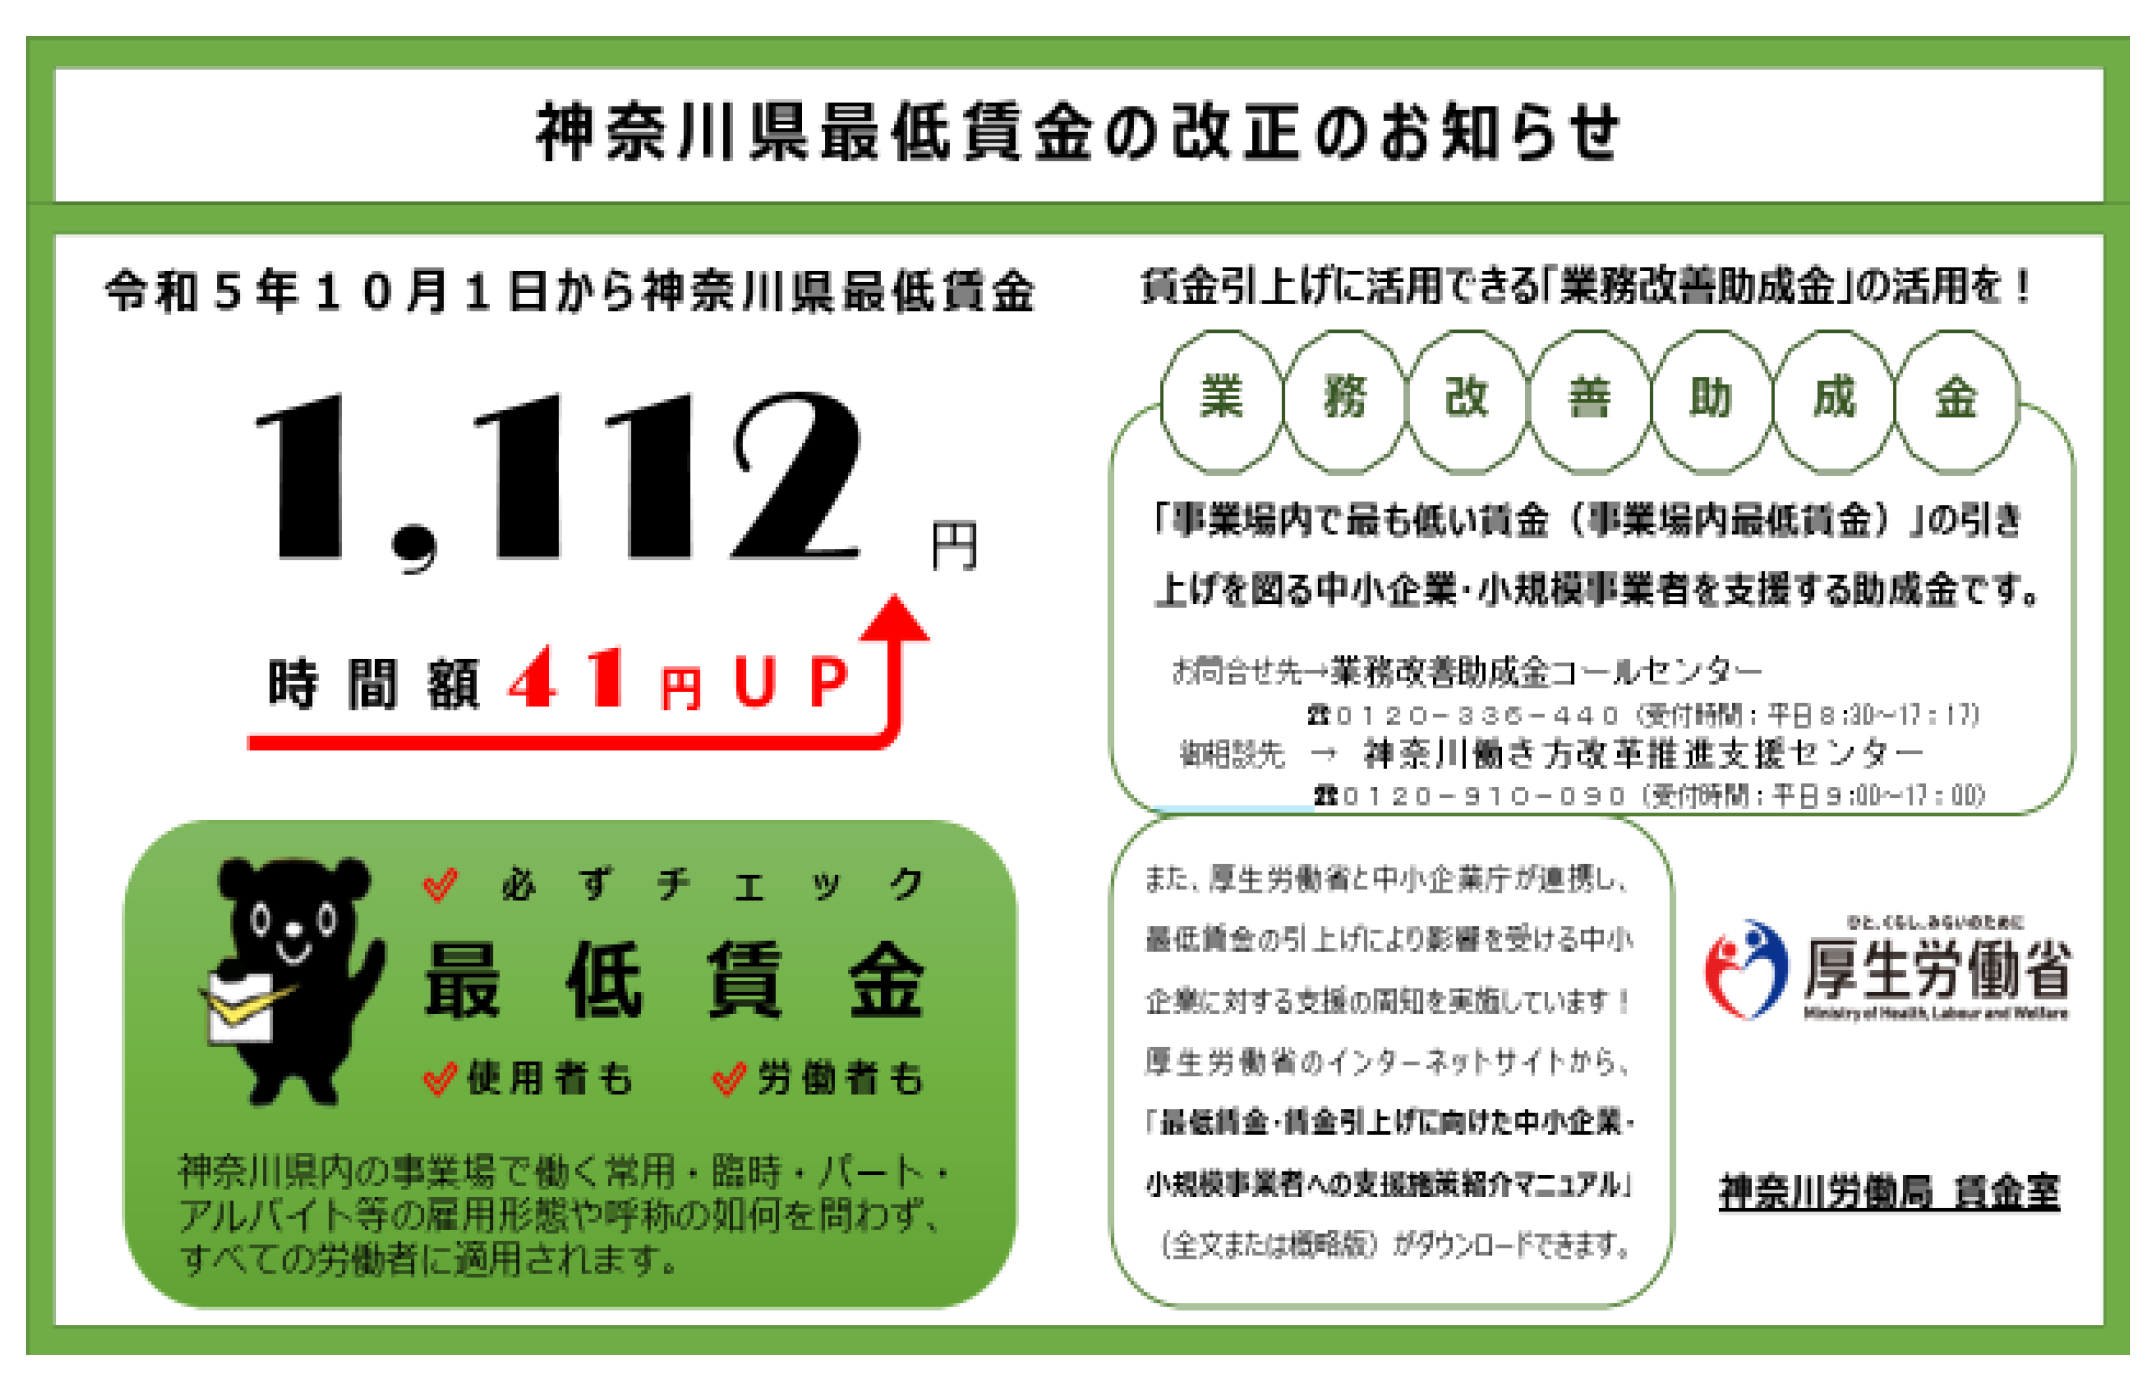 神奈川県最低賃金の改正のお知らせ